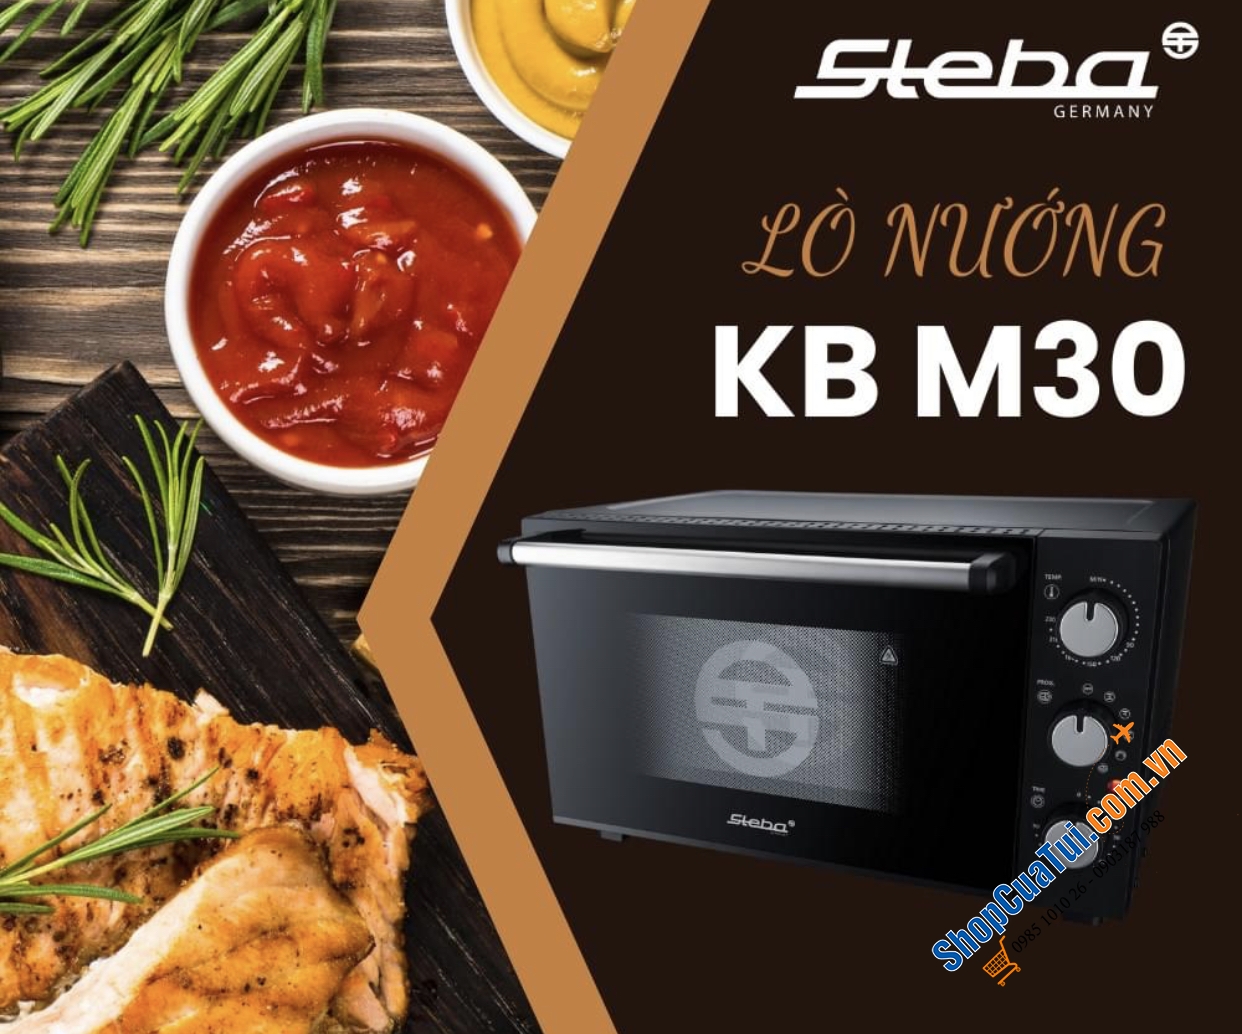 Lò nướng Steba KB M30 dung tích 30 lít công suất 1500w, tiện dùng cho bếp gia đình